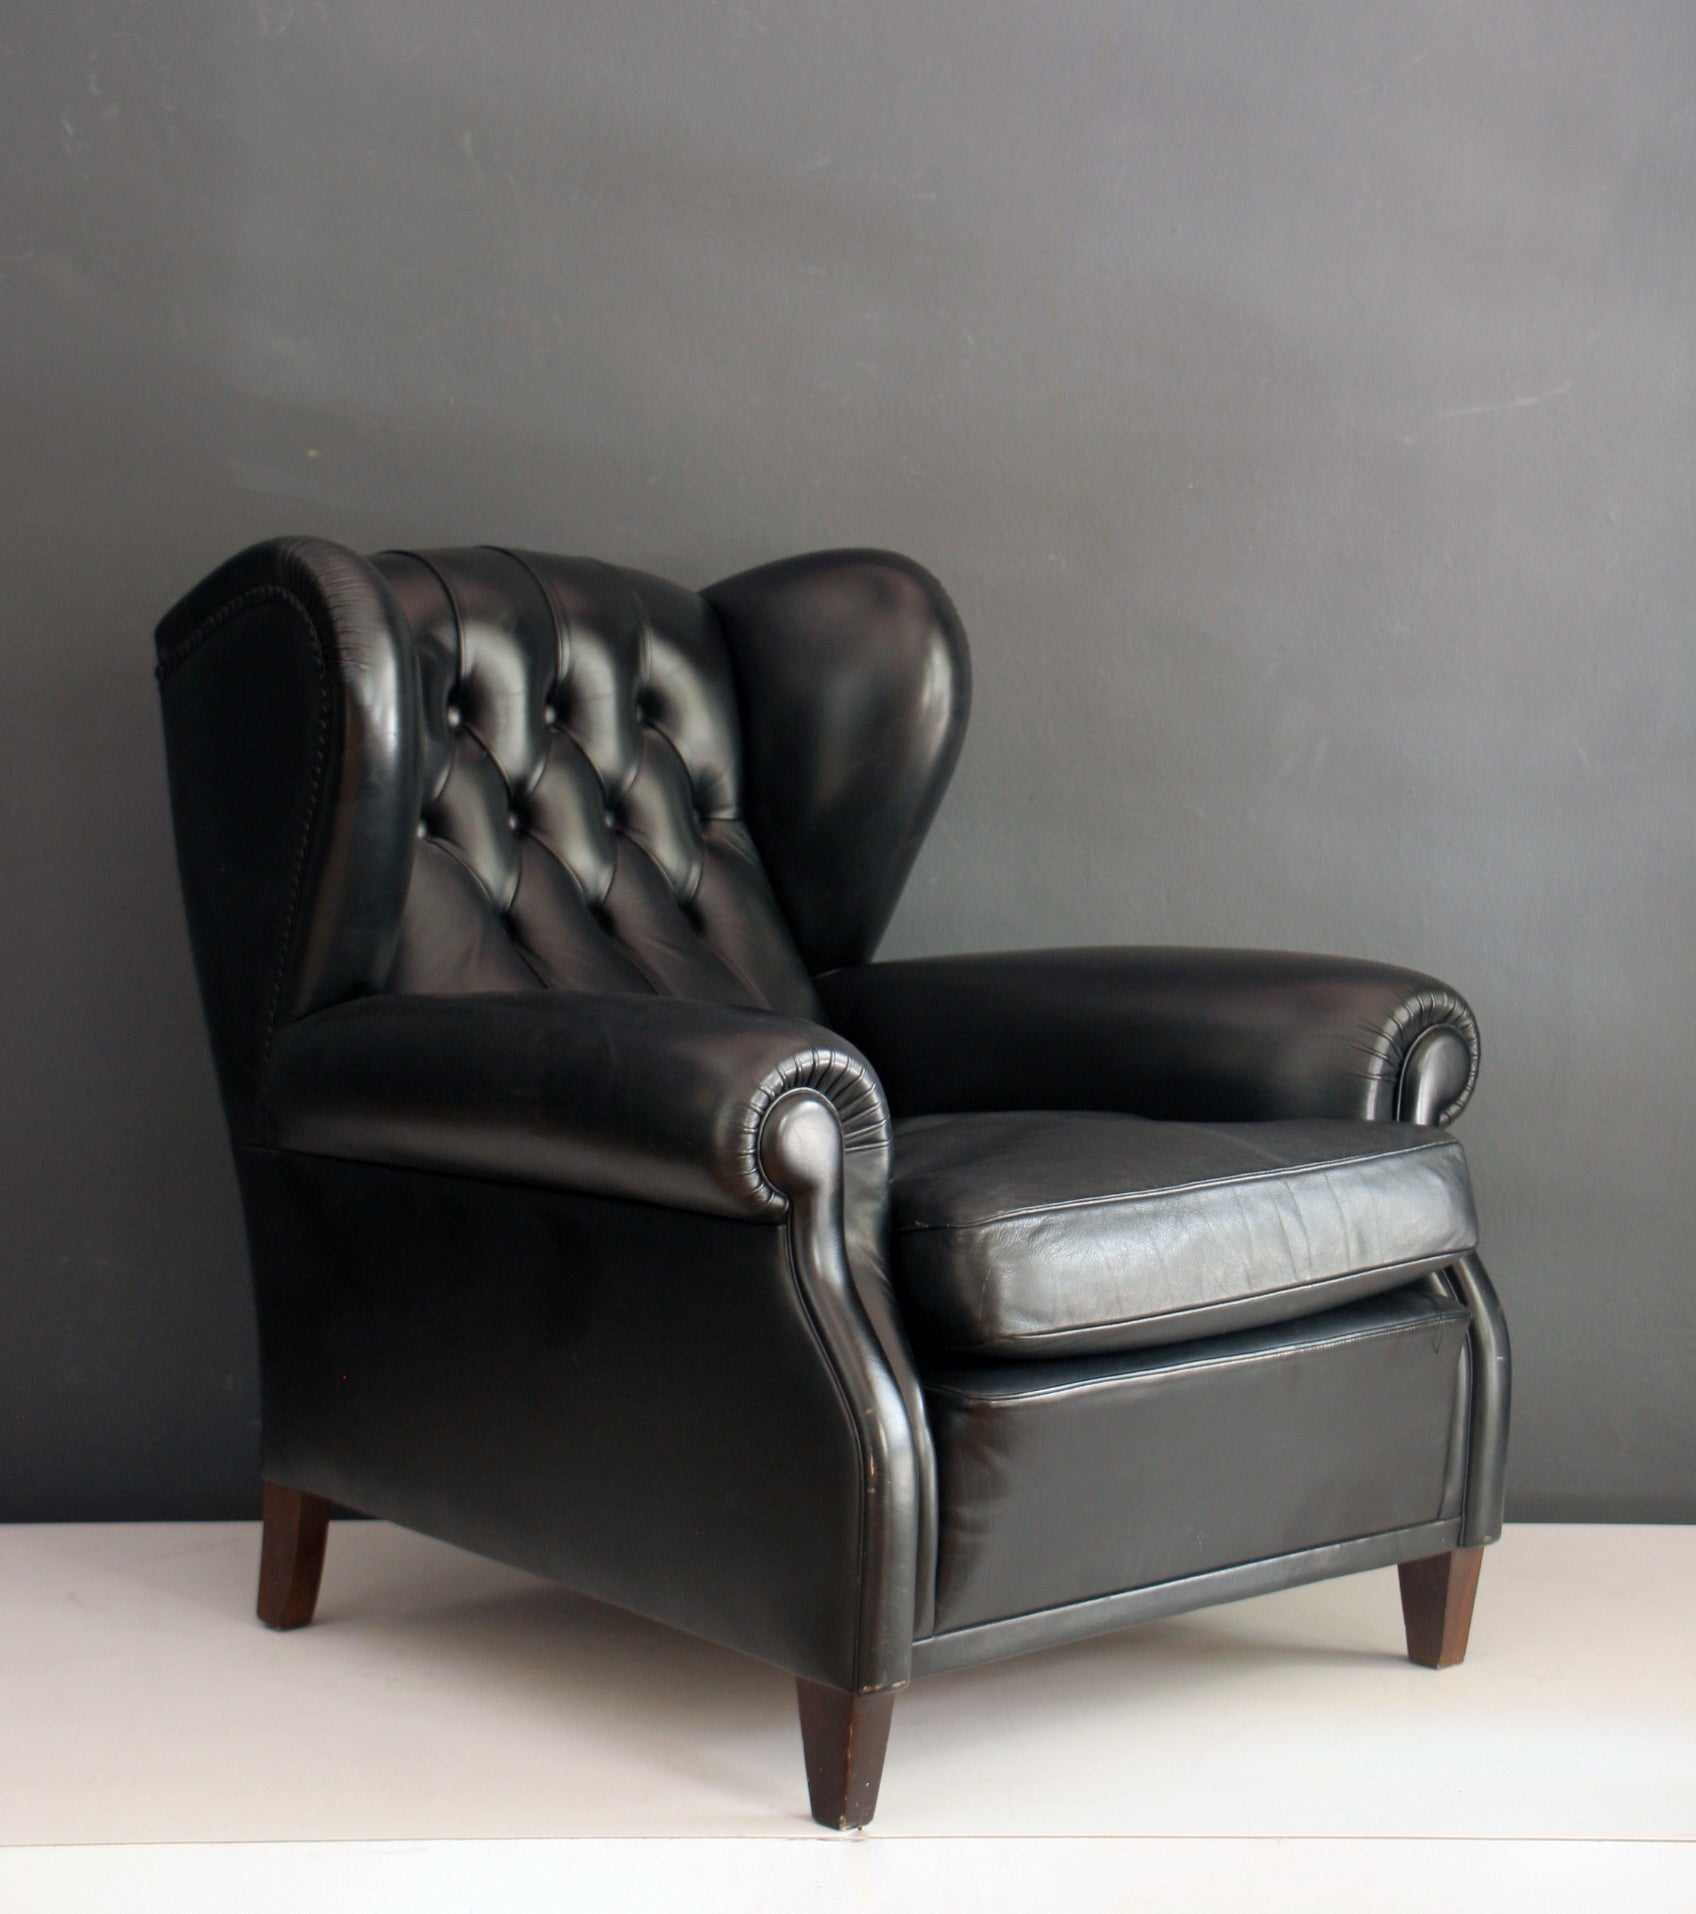 "Poltrona Frau 1919" Chair